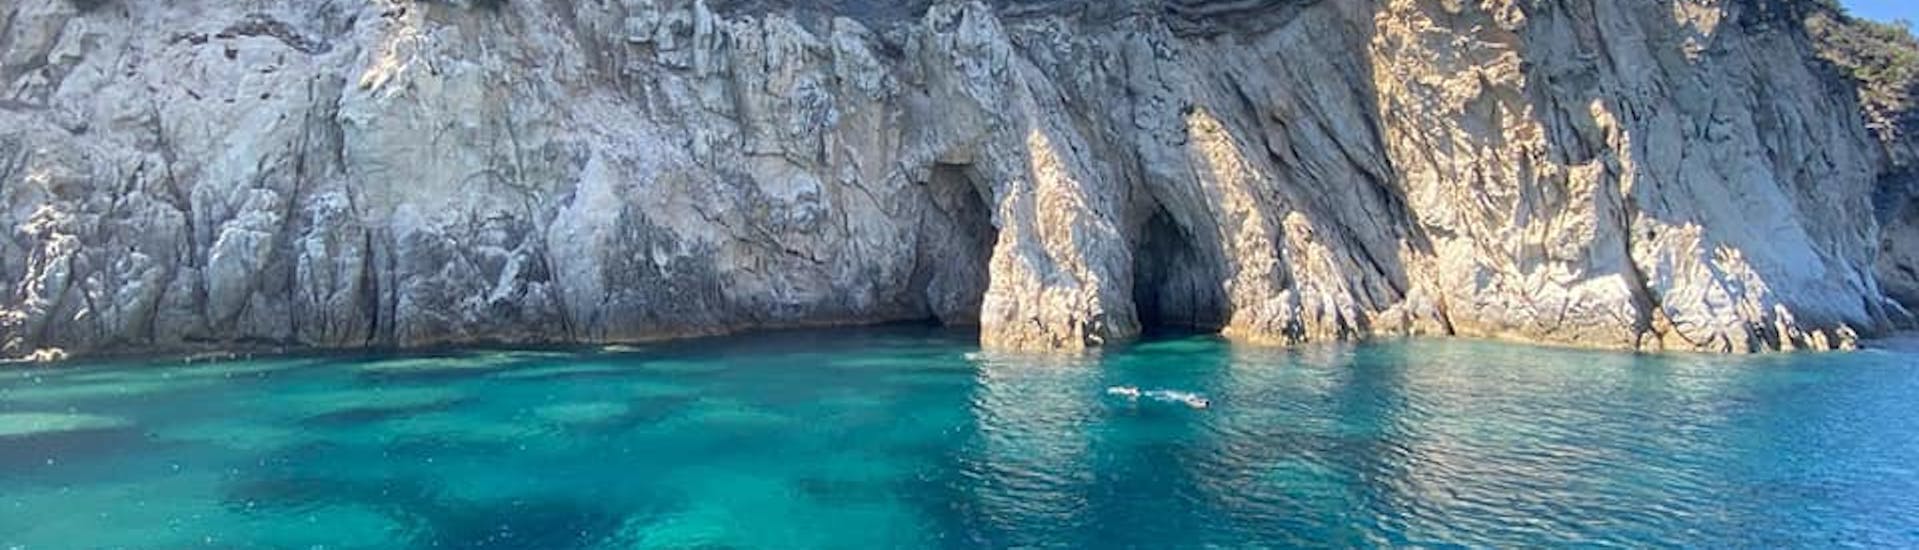 La splendida costa dell'Elba può essere ammirata durante l'escursione in barca al relitto di Pomonte da Marina di Campo con snorkeling.